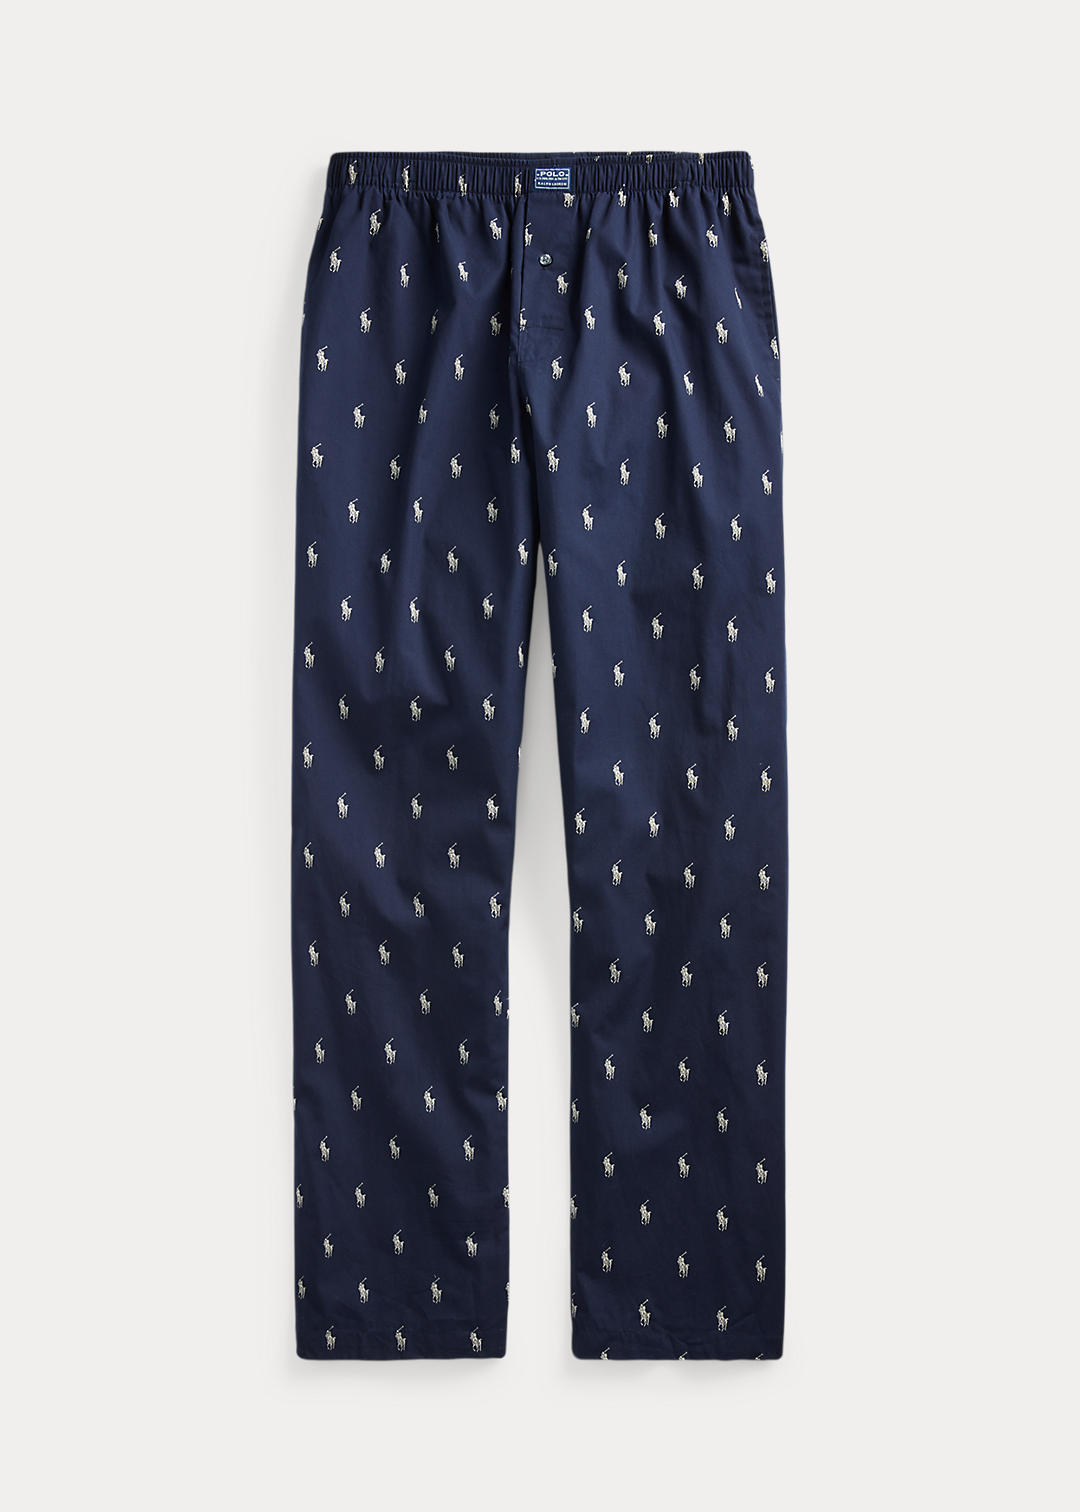 Пижамные брюки с пони по всей длине Ralph Lauren